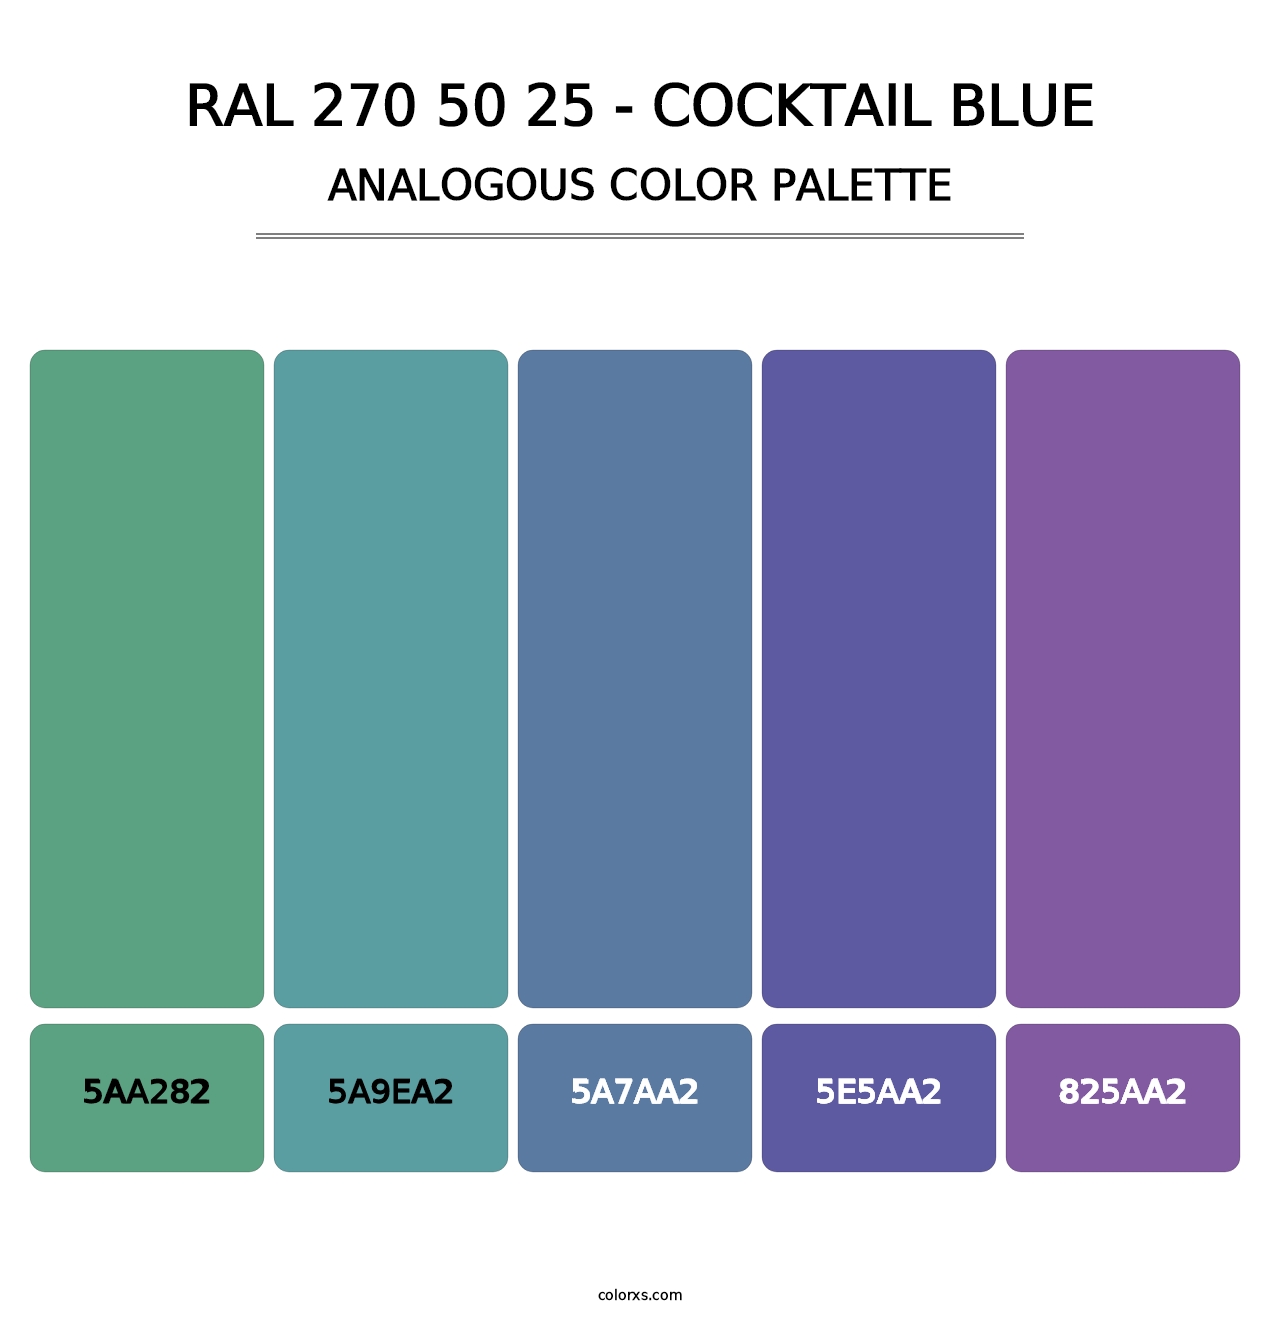 RAL 270 50 25 - Cocktail Blue - Analogous Color Palette